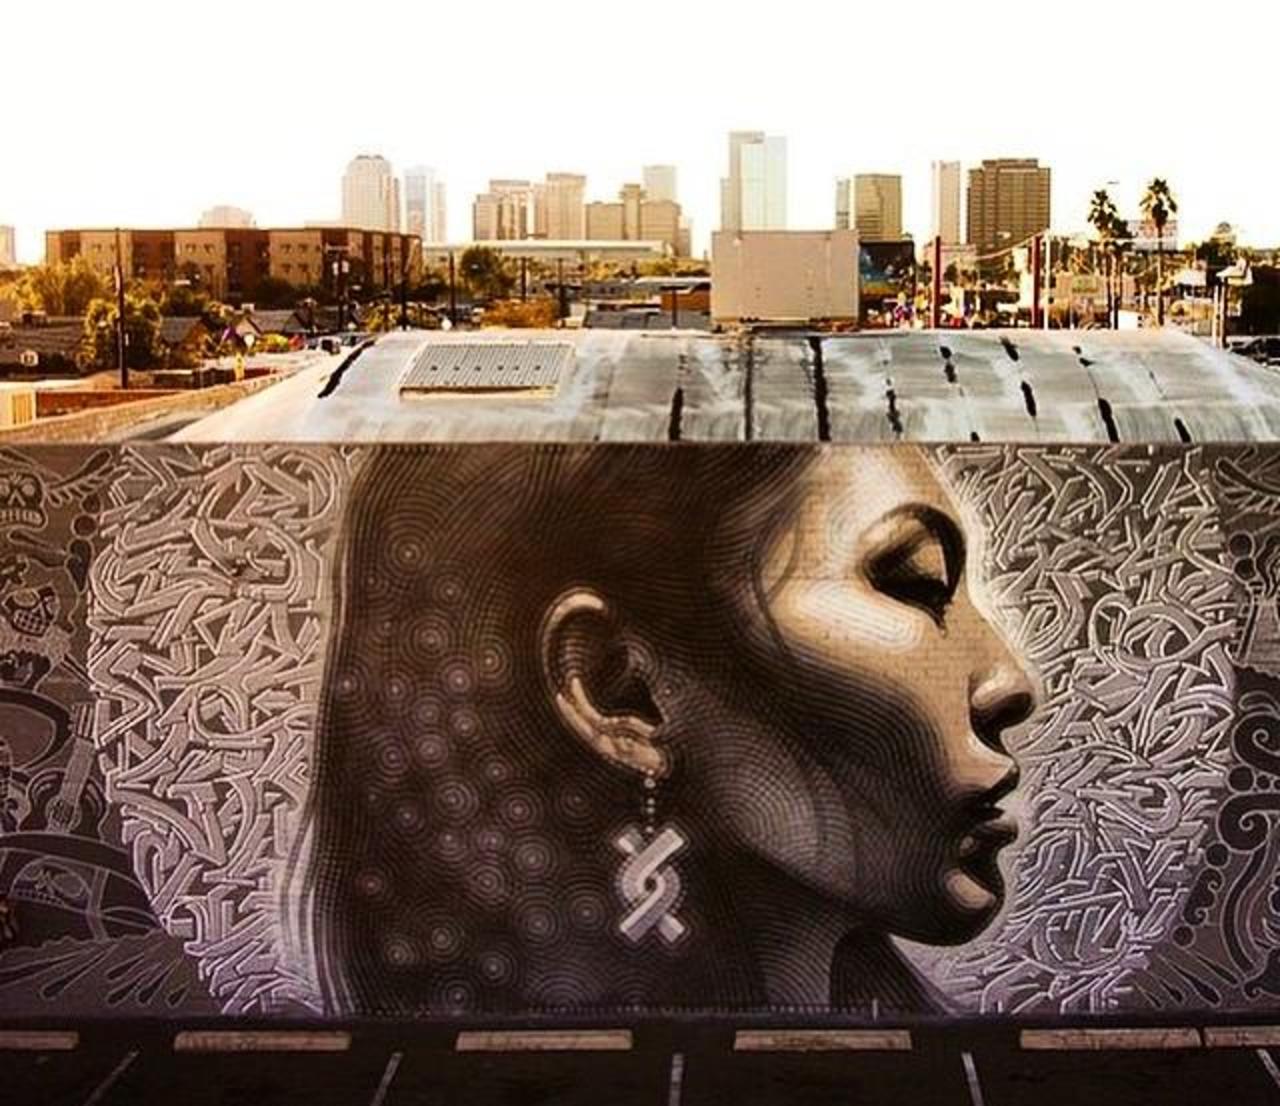 RT @GoogleStreetArt Latest Street Art work by El Mac in Phoenix, Arizona
#art #mural #graffiti #streetart http://t.co/t10VRWJa8U